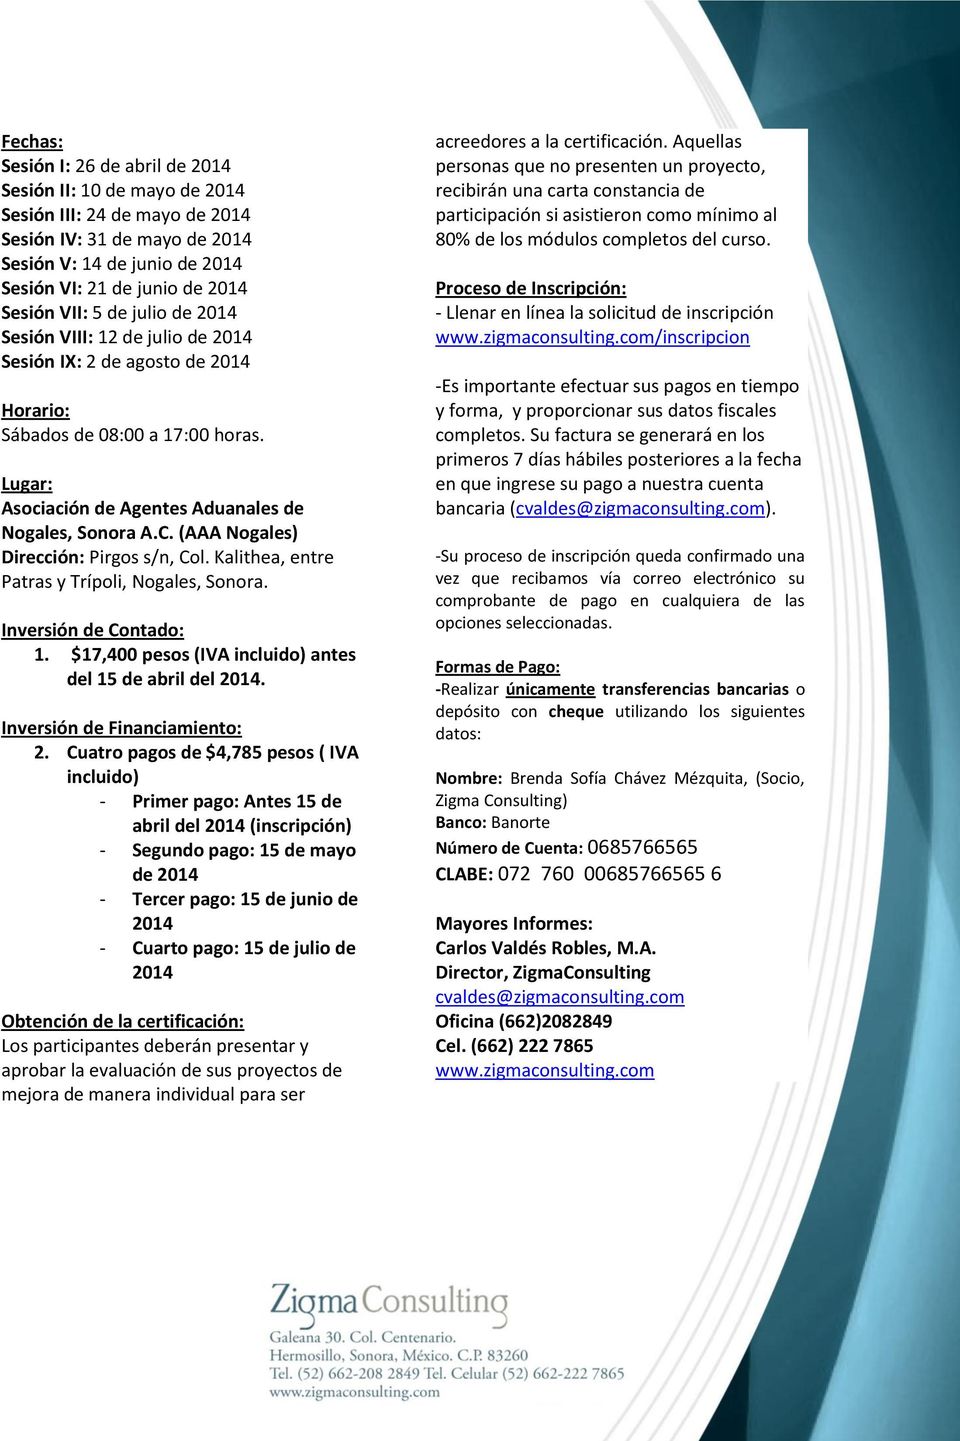 (AAA Nogales) Dirección: Pirgos s/n, Col. Kalithea, entre Patras y Trípoli, Nogales, Sonora. Inversión de Contado: 1. $17,400 pesos (IVA incluido) antes del 15 de abril del 2014.